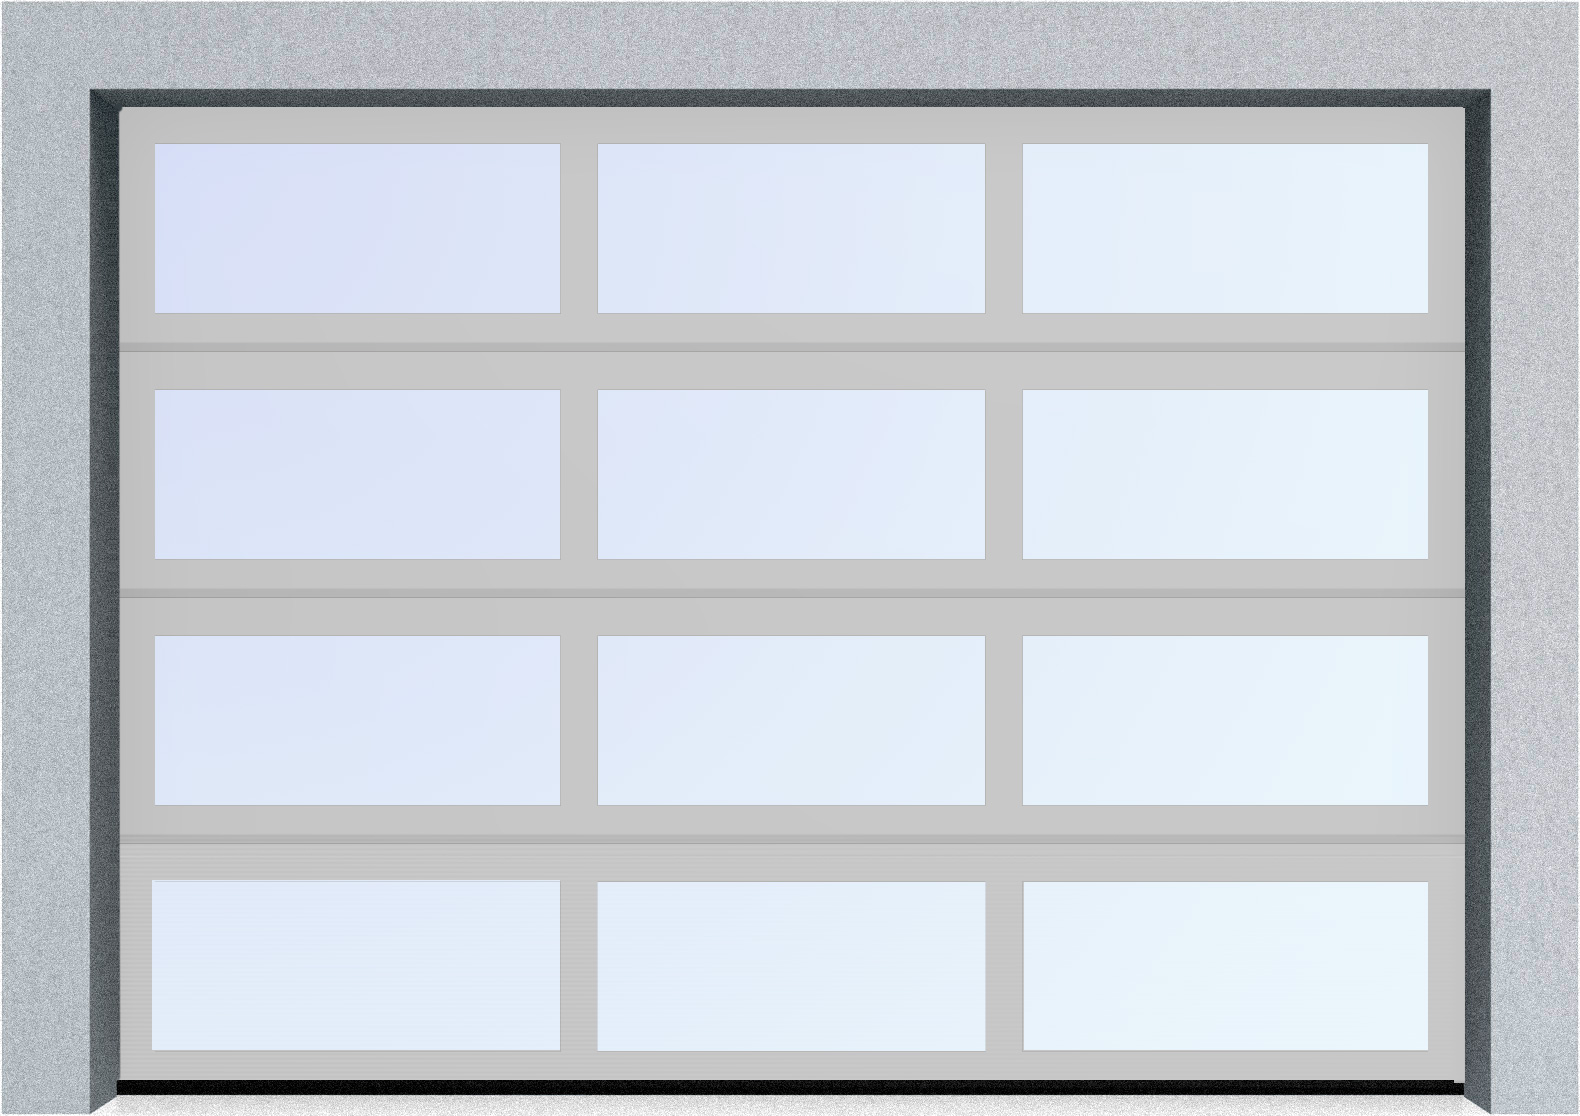  Секционные панорамные ворота серии AluTrend (АЛП) 6375х4500 нижняя панель стандартные цвета, фото 8 